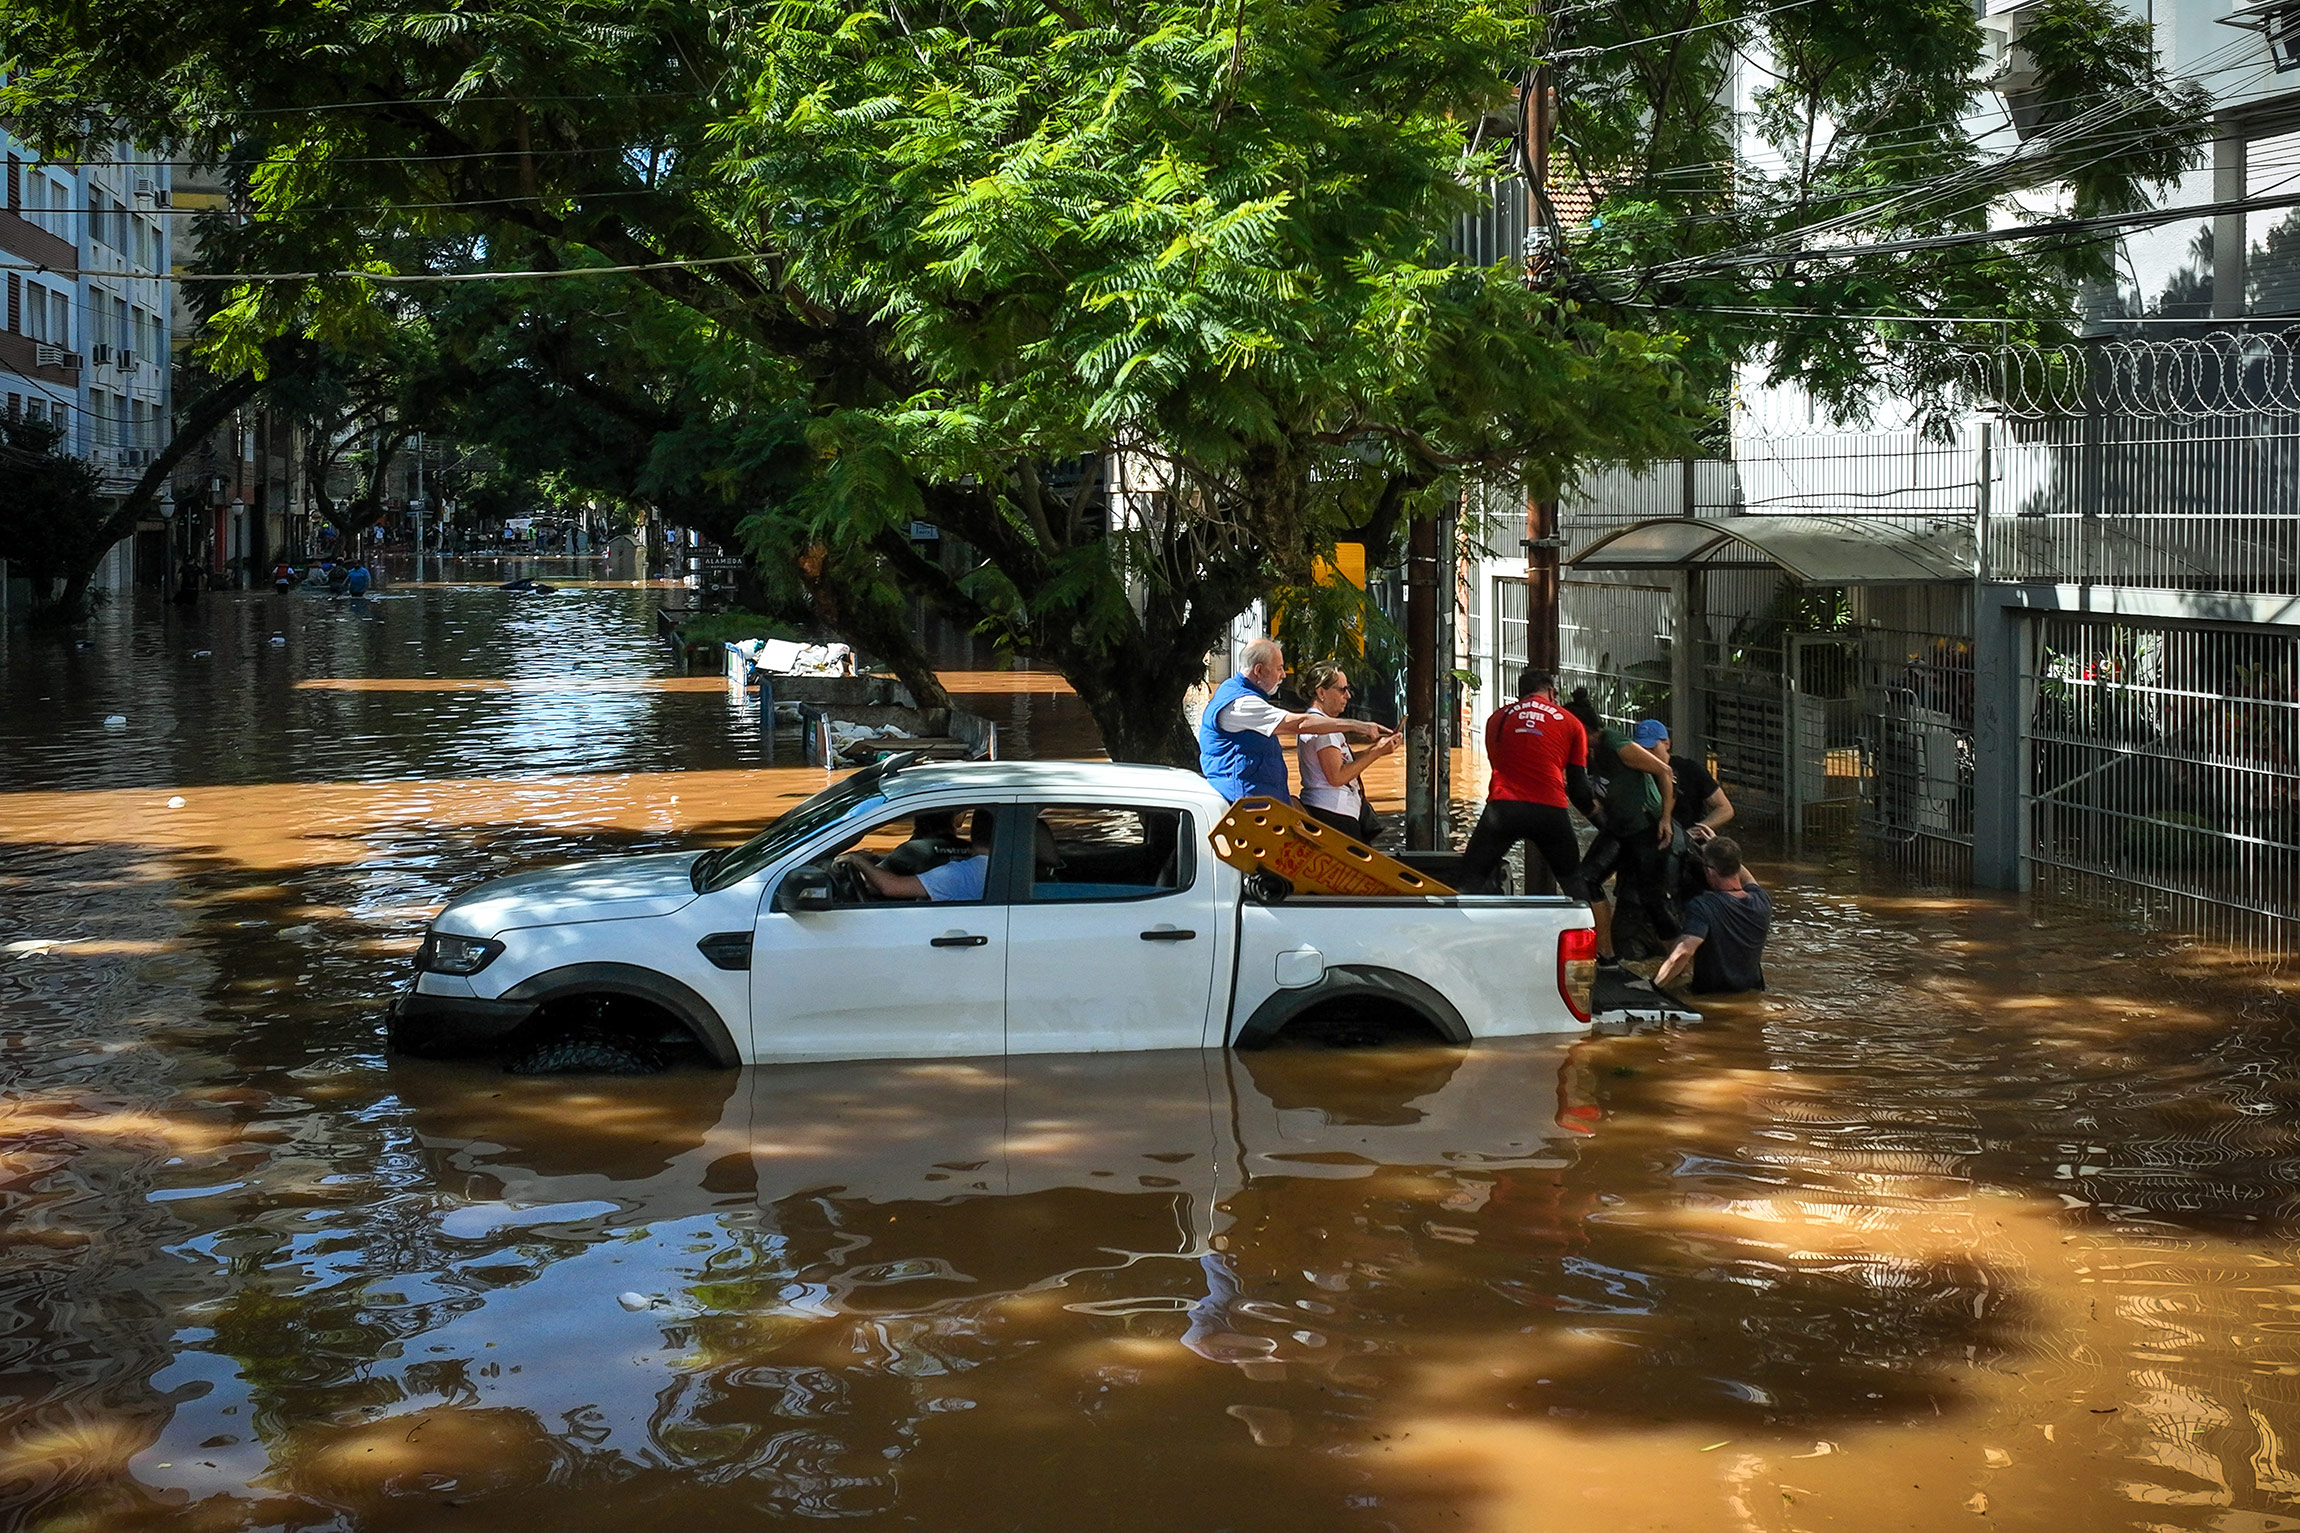 Наводнение, вызванное сильными дождями, повредило инфраструктуру, по всему штату Риу-Гранди-ду-Сул наблюдаются перебои с электроэнергией.